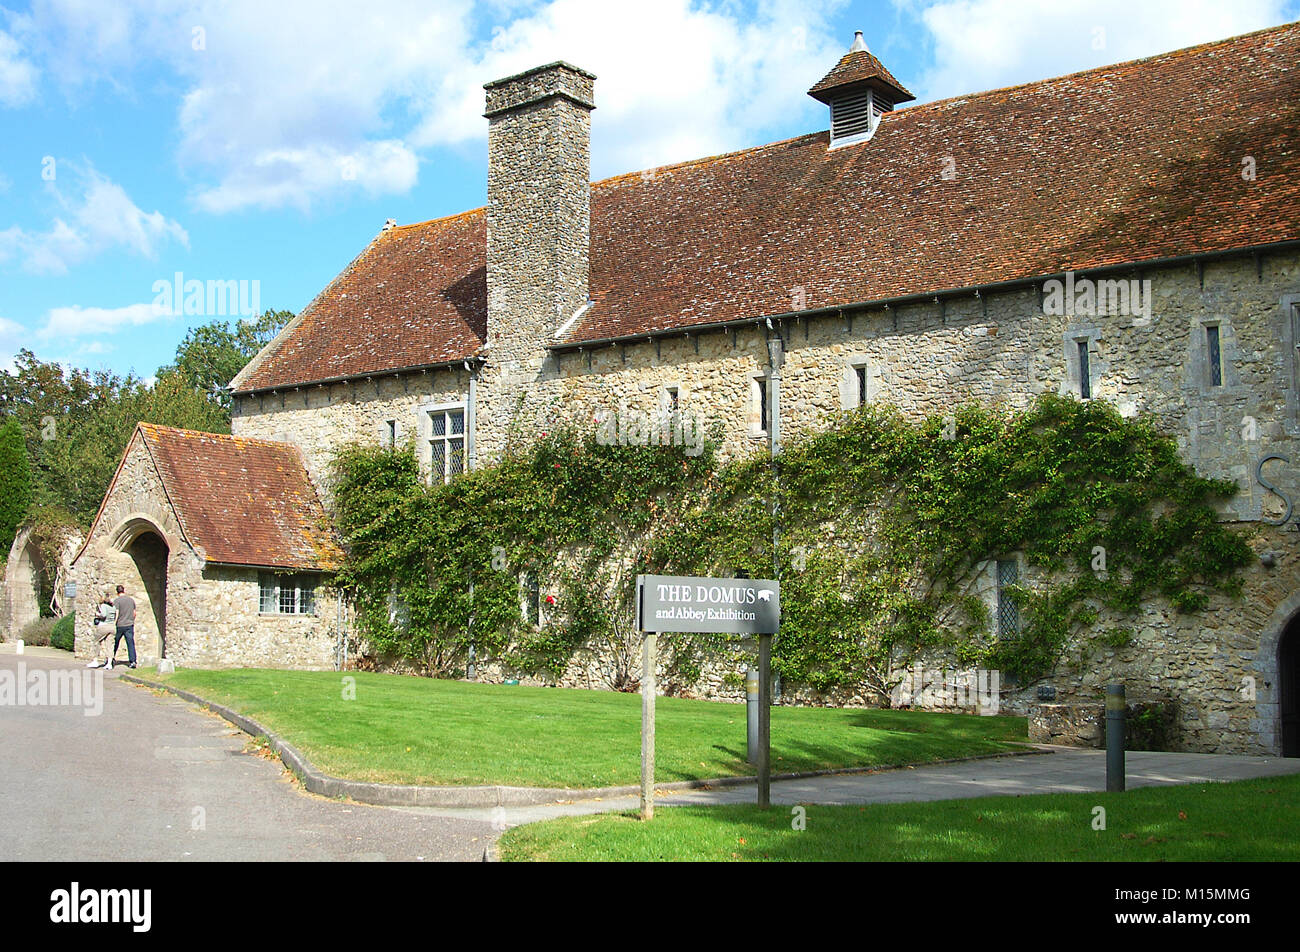 The Domus, Beaulieu Abbey, Beaulieu, Hampshire, England, UK Stock Photo